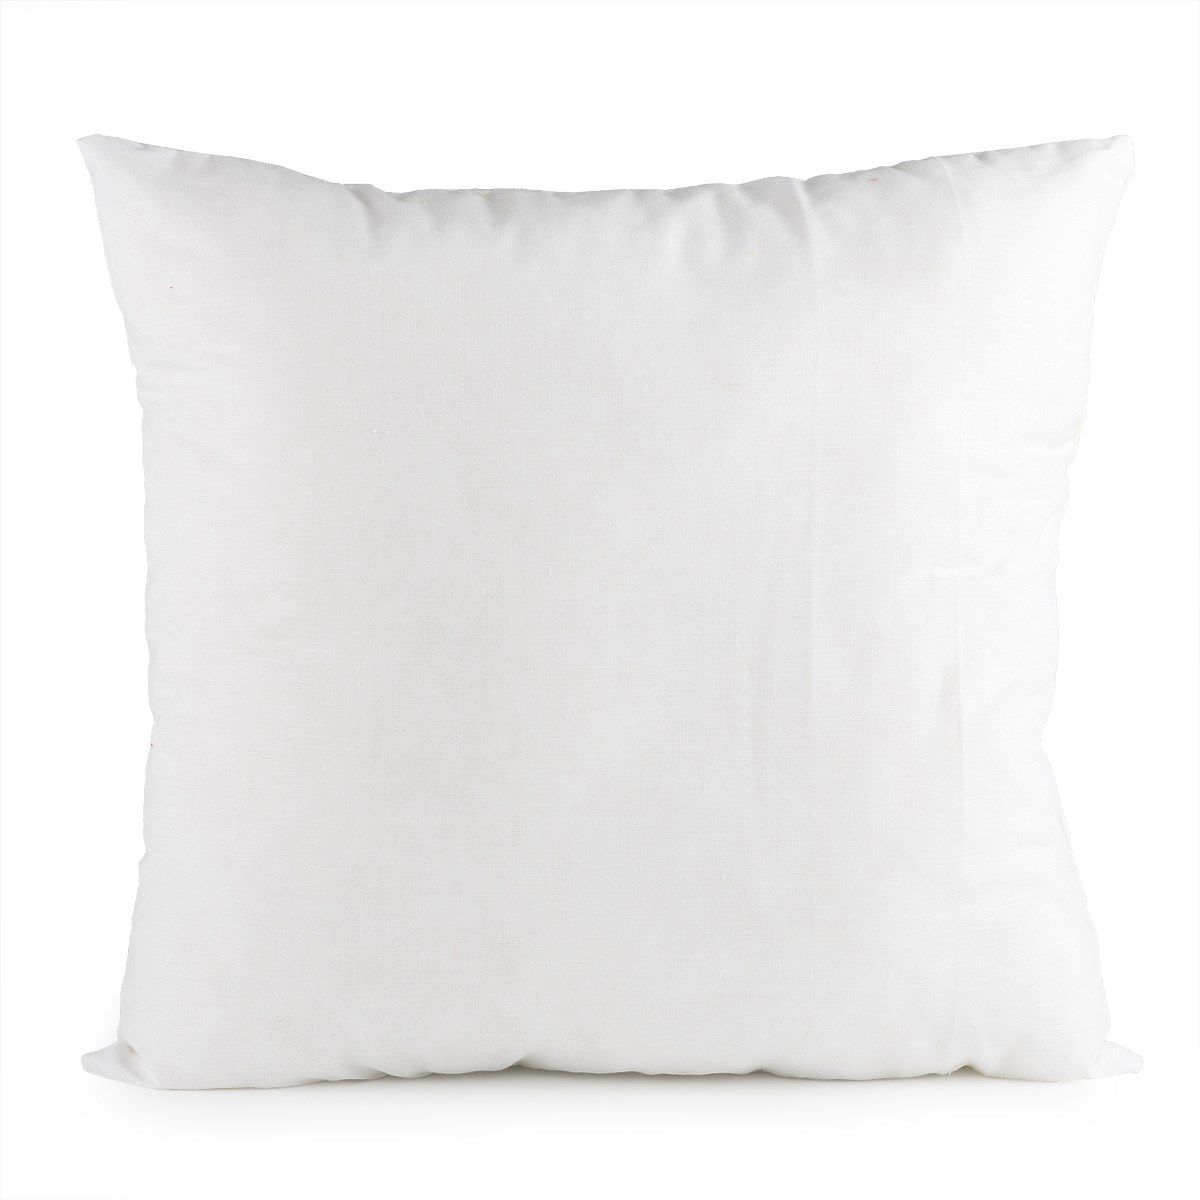 Bellatex výplňkový polštář z bavlny Bílý   - 50x50 cm 400 gr - POVLECENI-OBCHOD.CZ